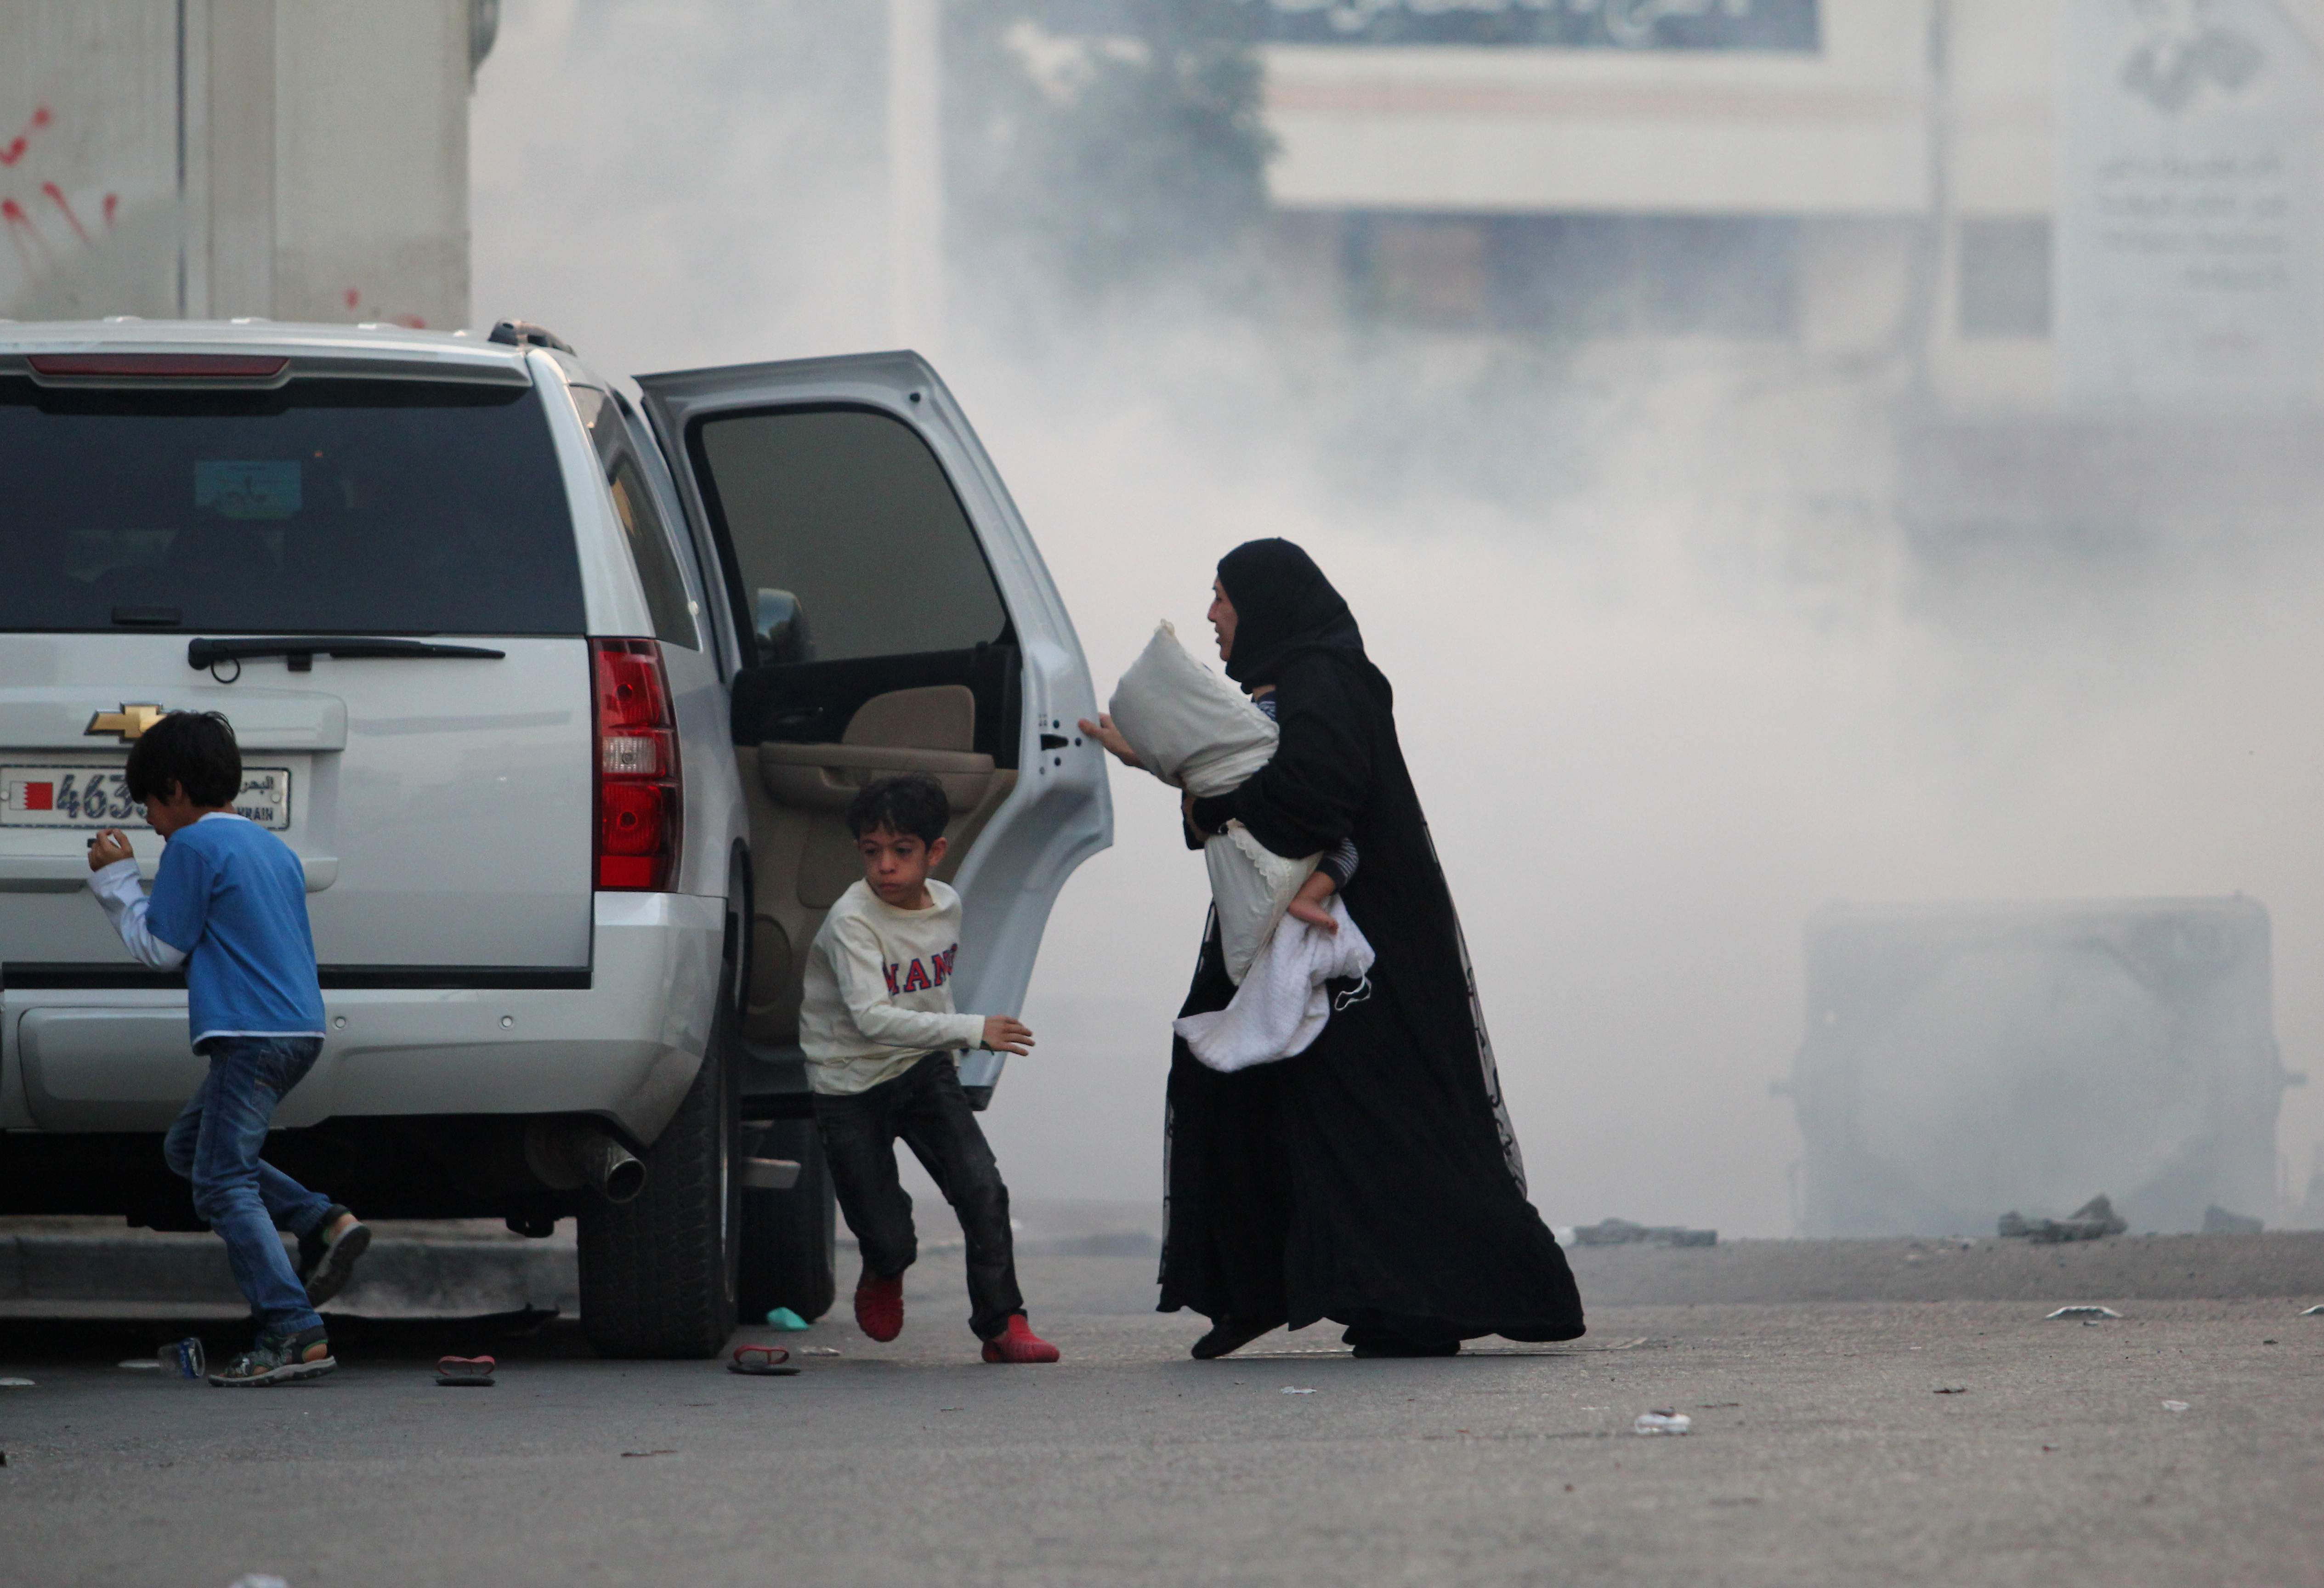 Manáma, Bahrajn, 2. ledna 2015. Holčička uprostřed slzného plynu, její matka a sourozenci spěchají uprostřed chaosu do auta. Dochází k násilným střetům mezi demonstranty a jednotkami policie poté, co byl zatčen Šejk Ali Salman. Opoziční protestující volají po jeho okamžitém propuštění. Autor fotografie Sayed Baqer Al Kamel. Copyright: Demotix